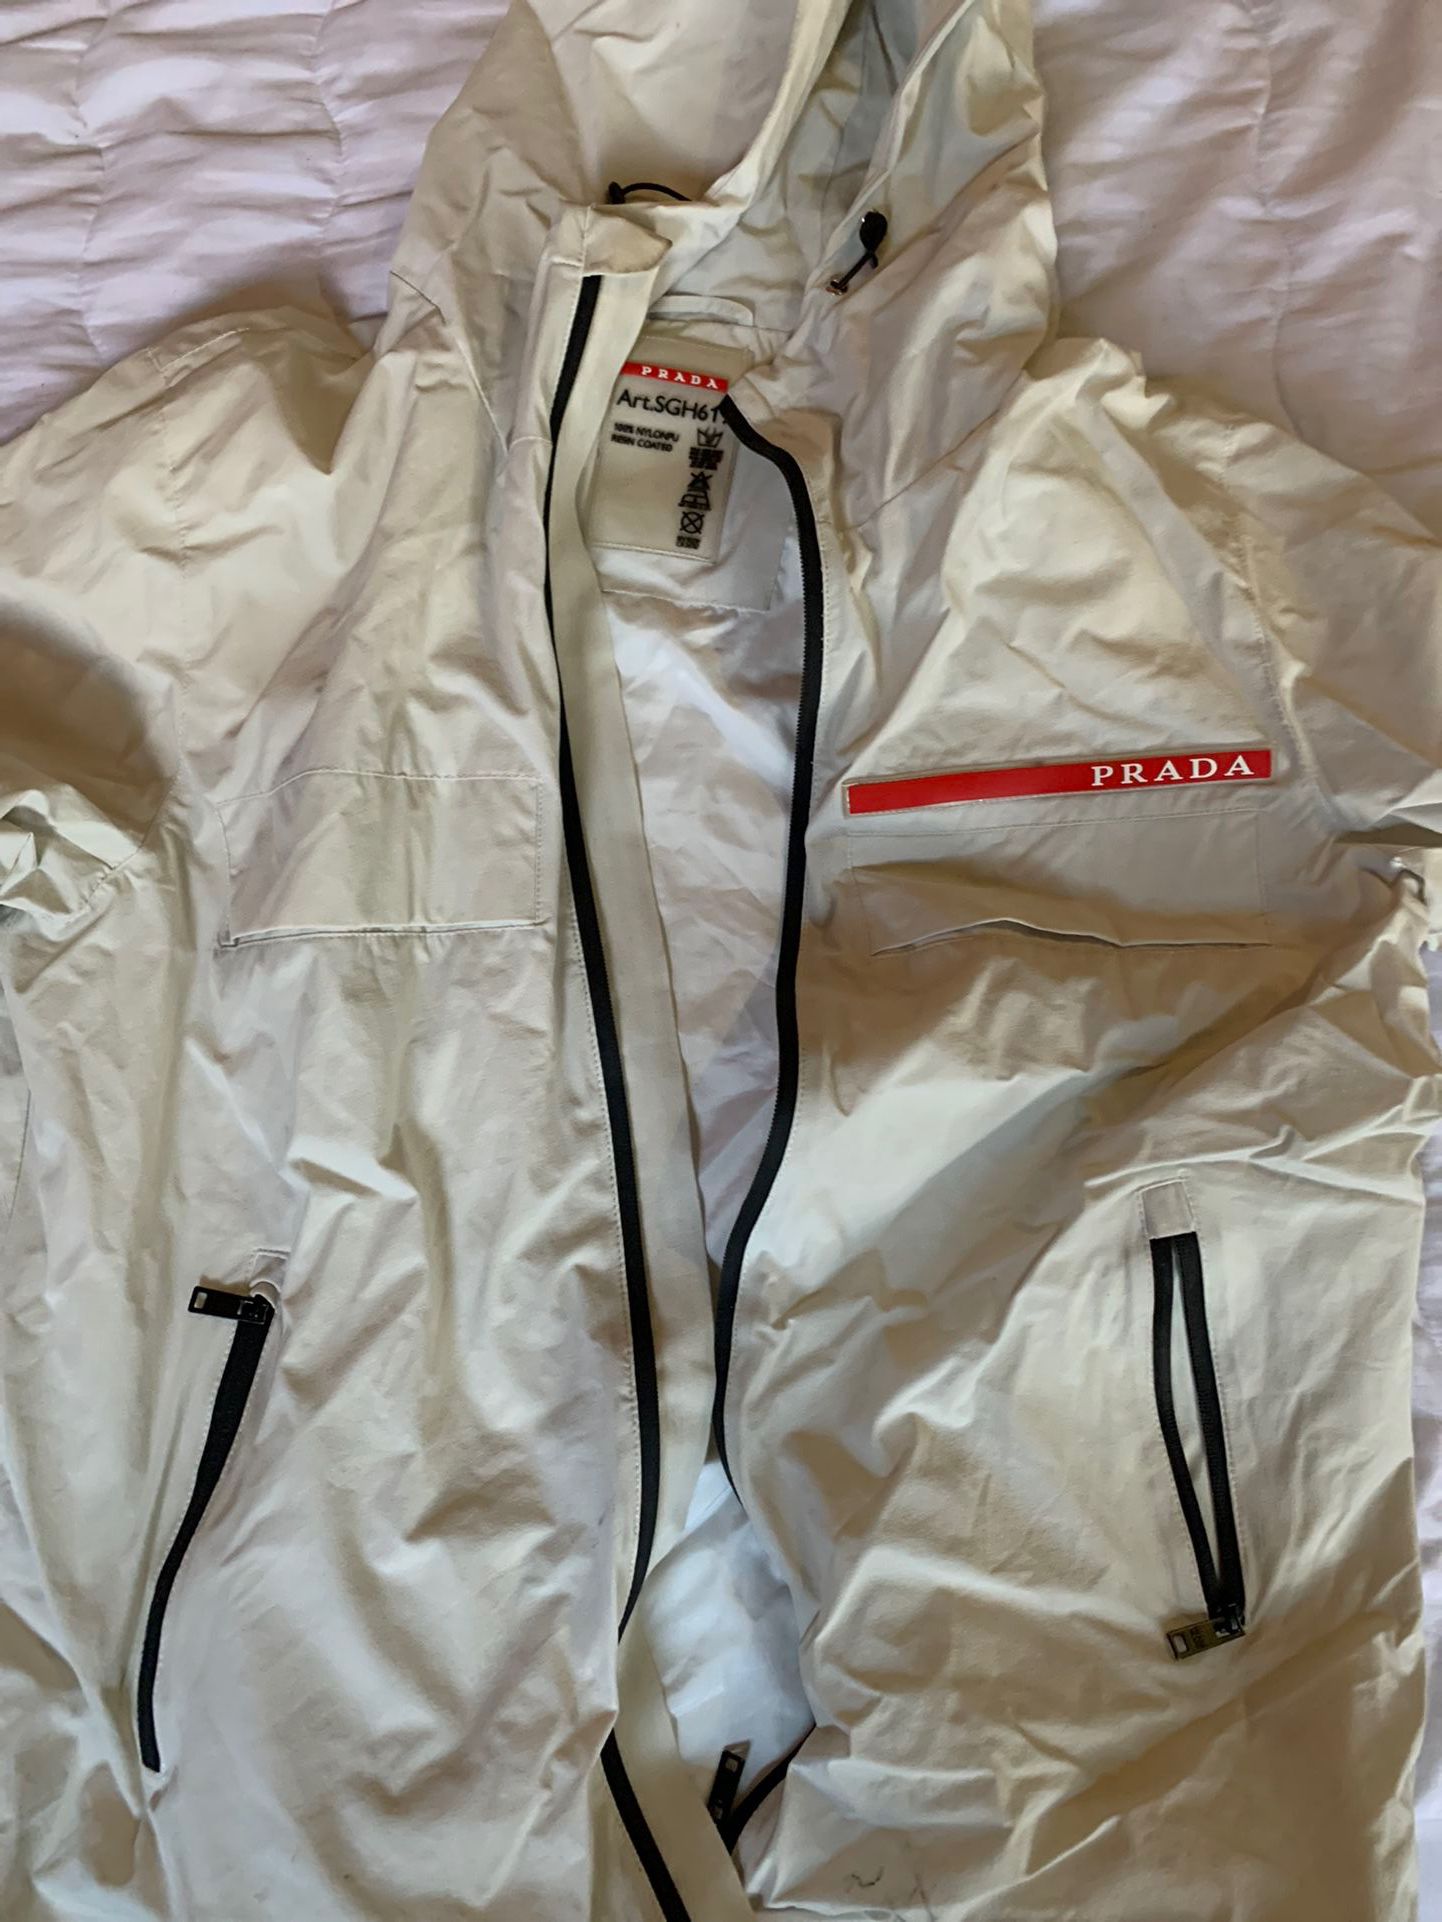 Prada ski Jacket for Sale in Miami, FL - OfferUp